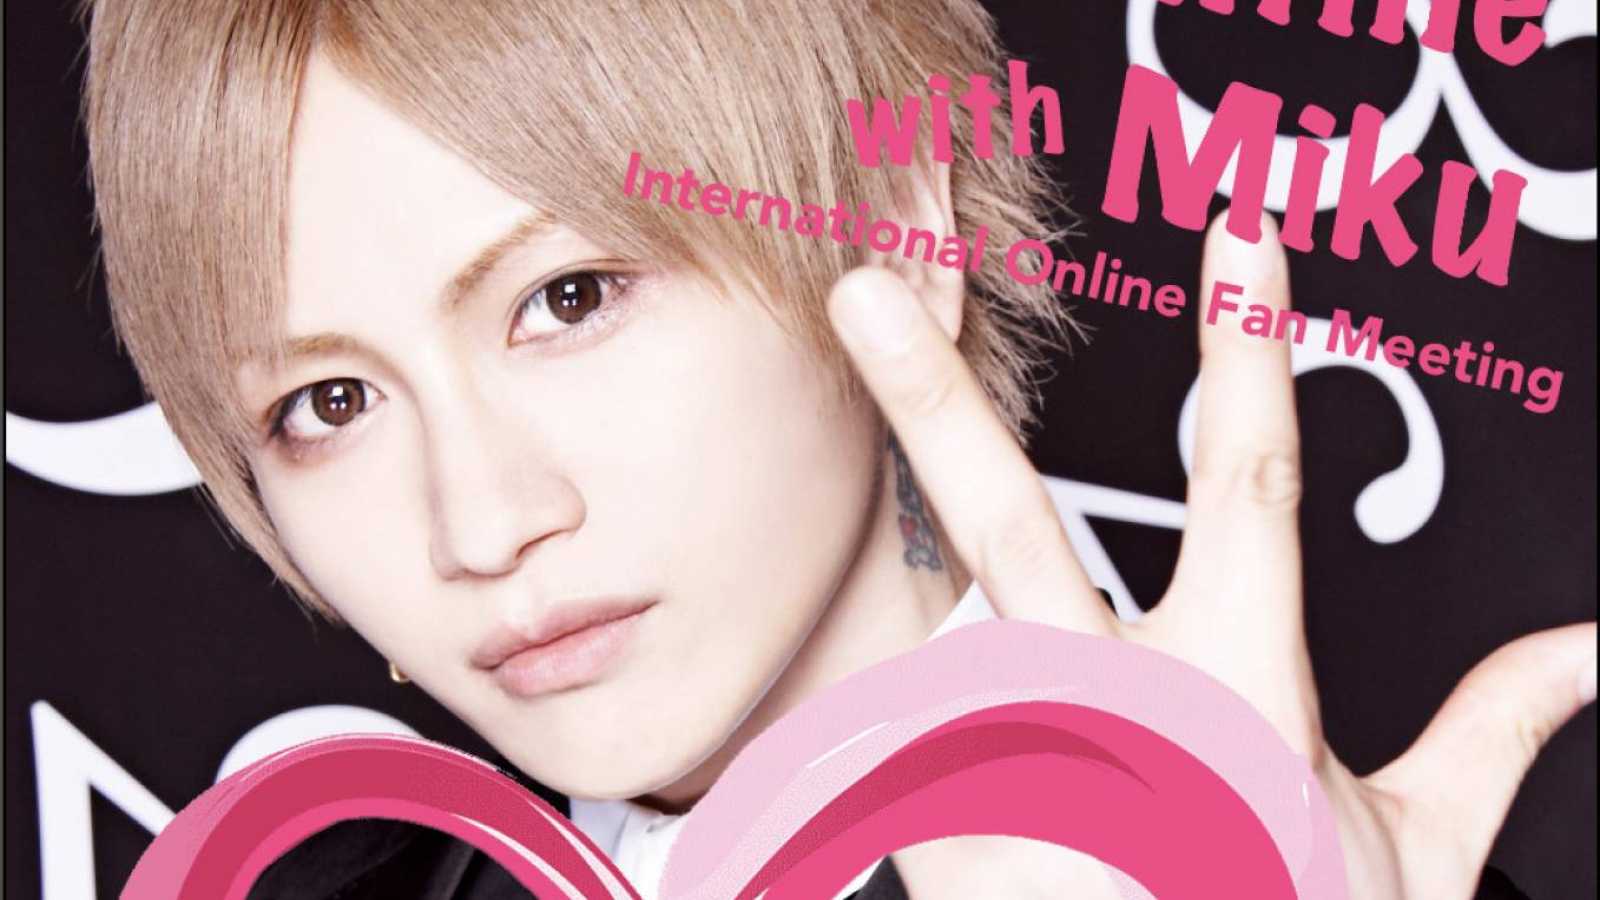 Miku Announces Online International Fan Meeting